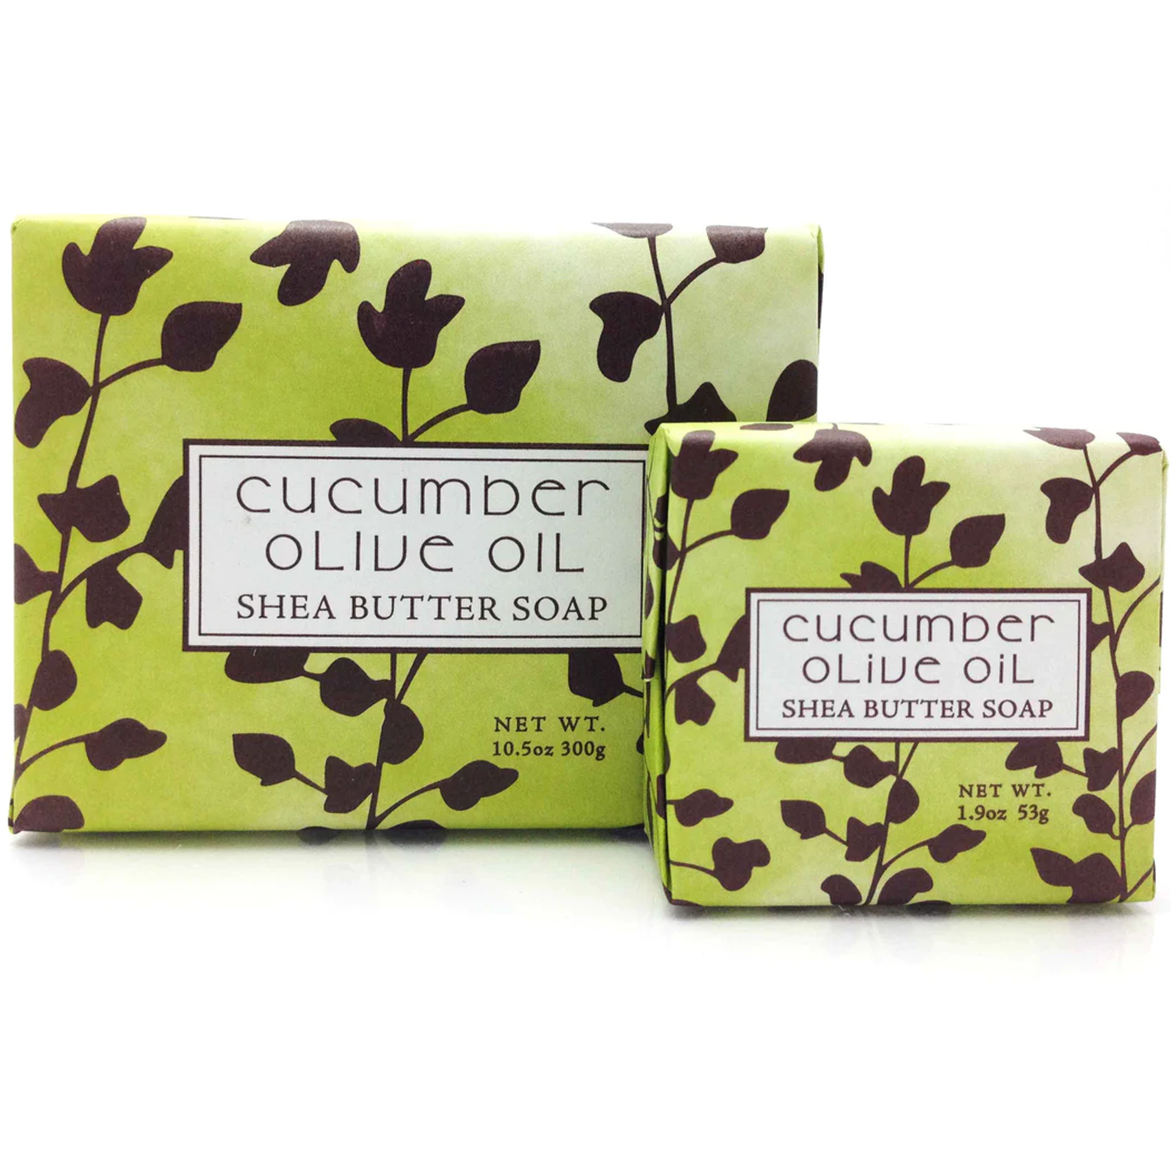 Cucumber Olive Oil Shea Butter Soap